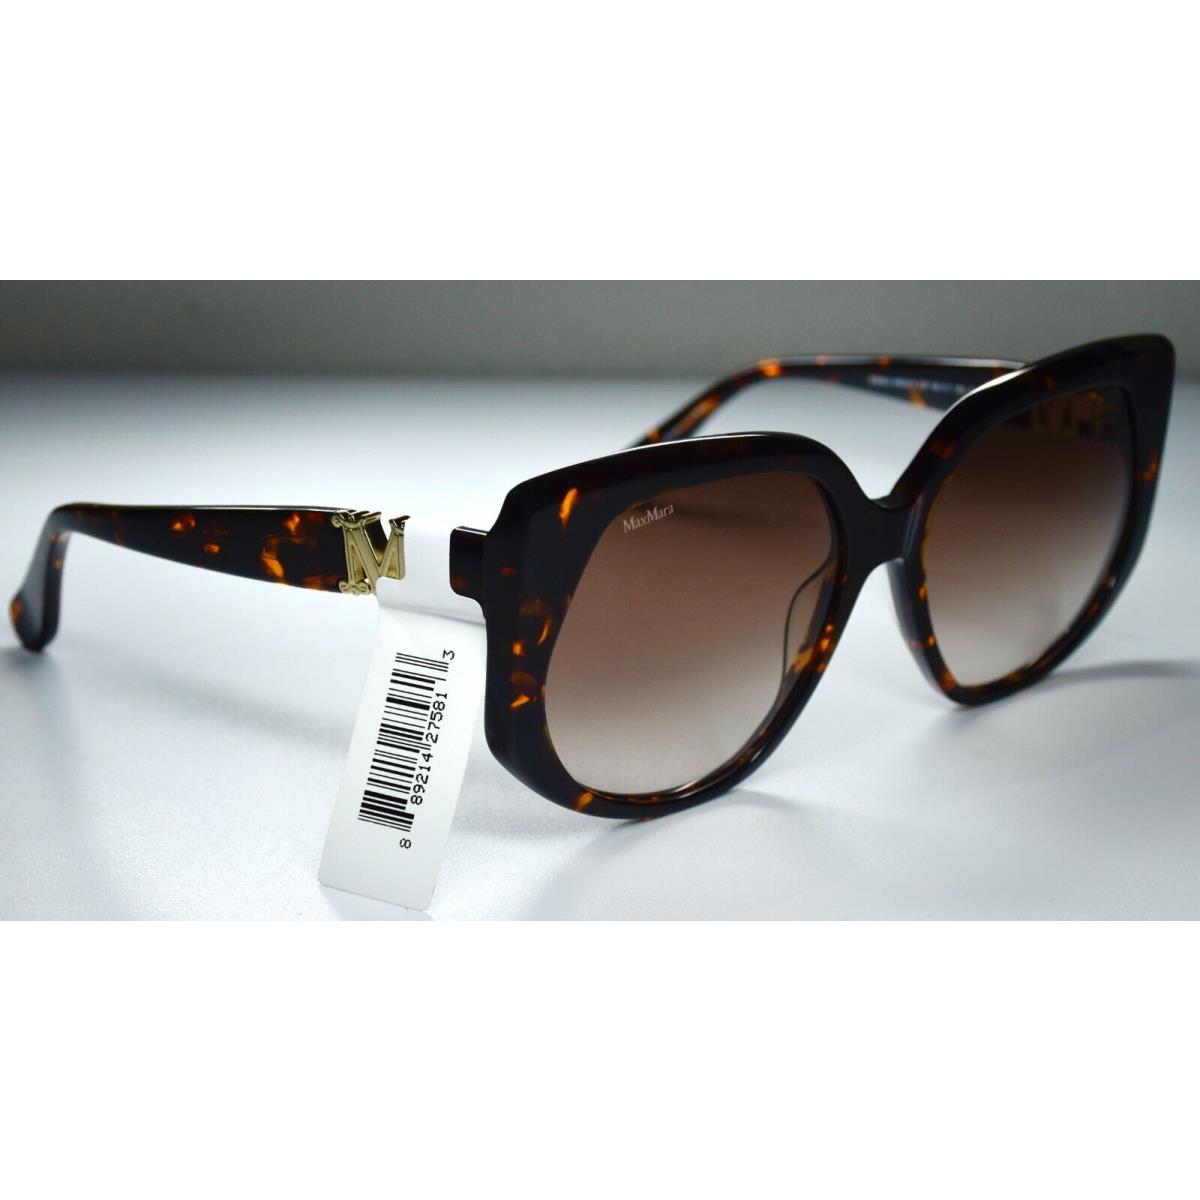 Max Mara sunglasses  - Brown Frame, Brown Lens